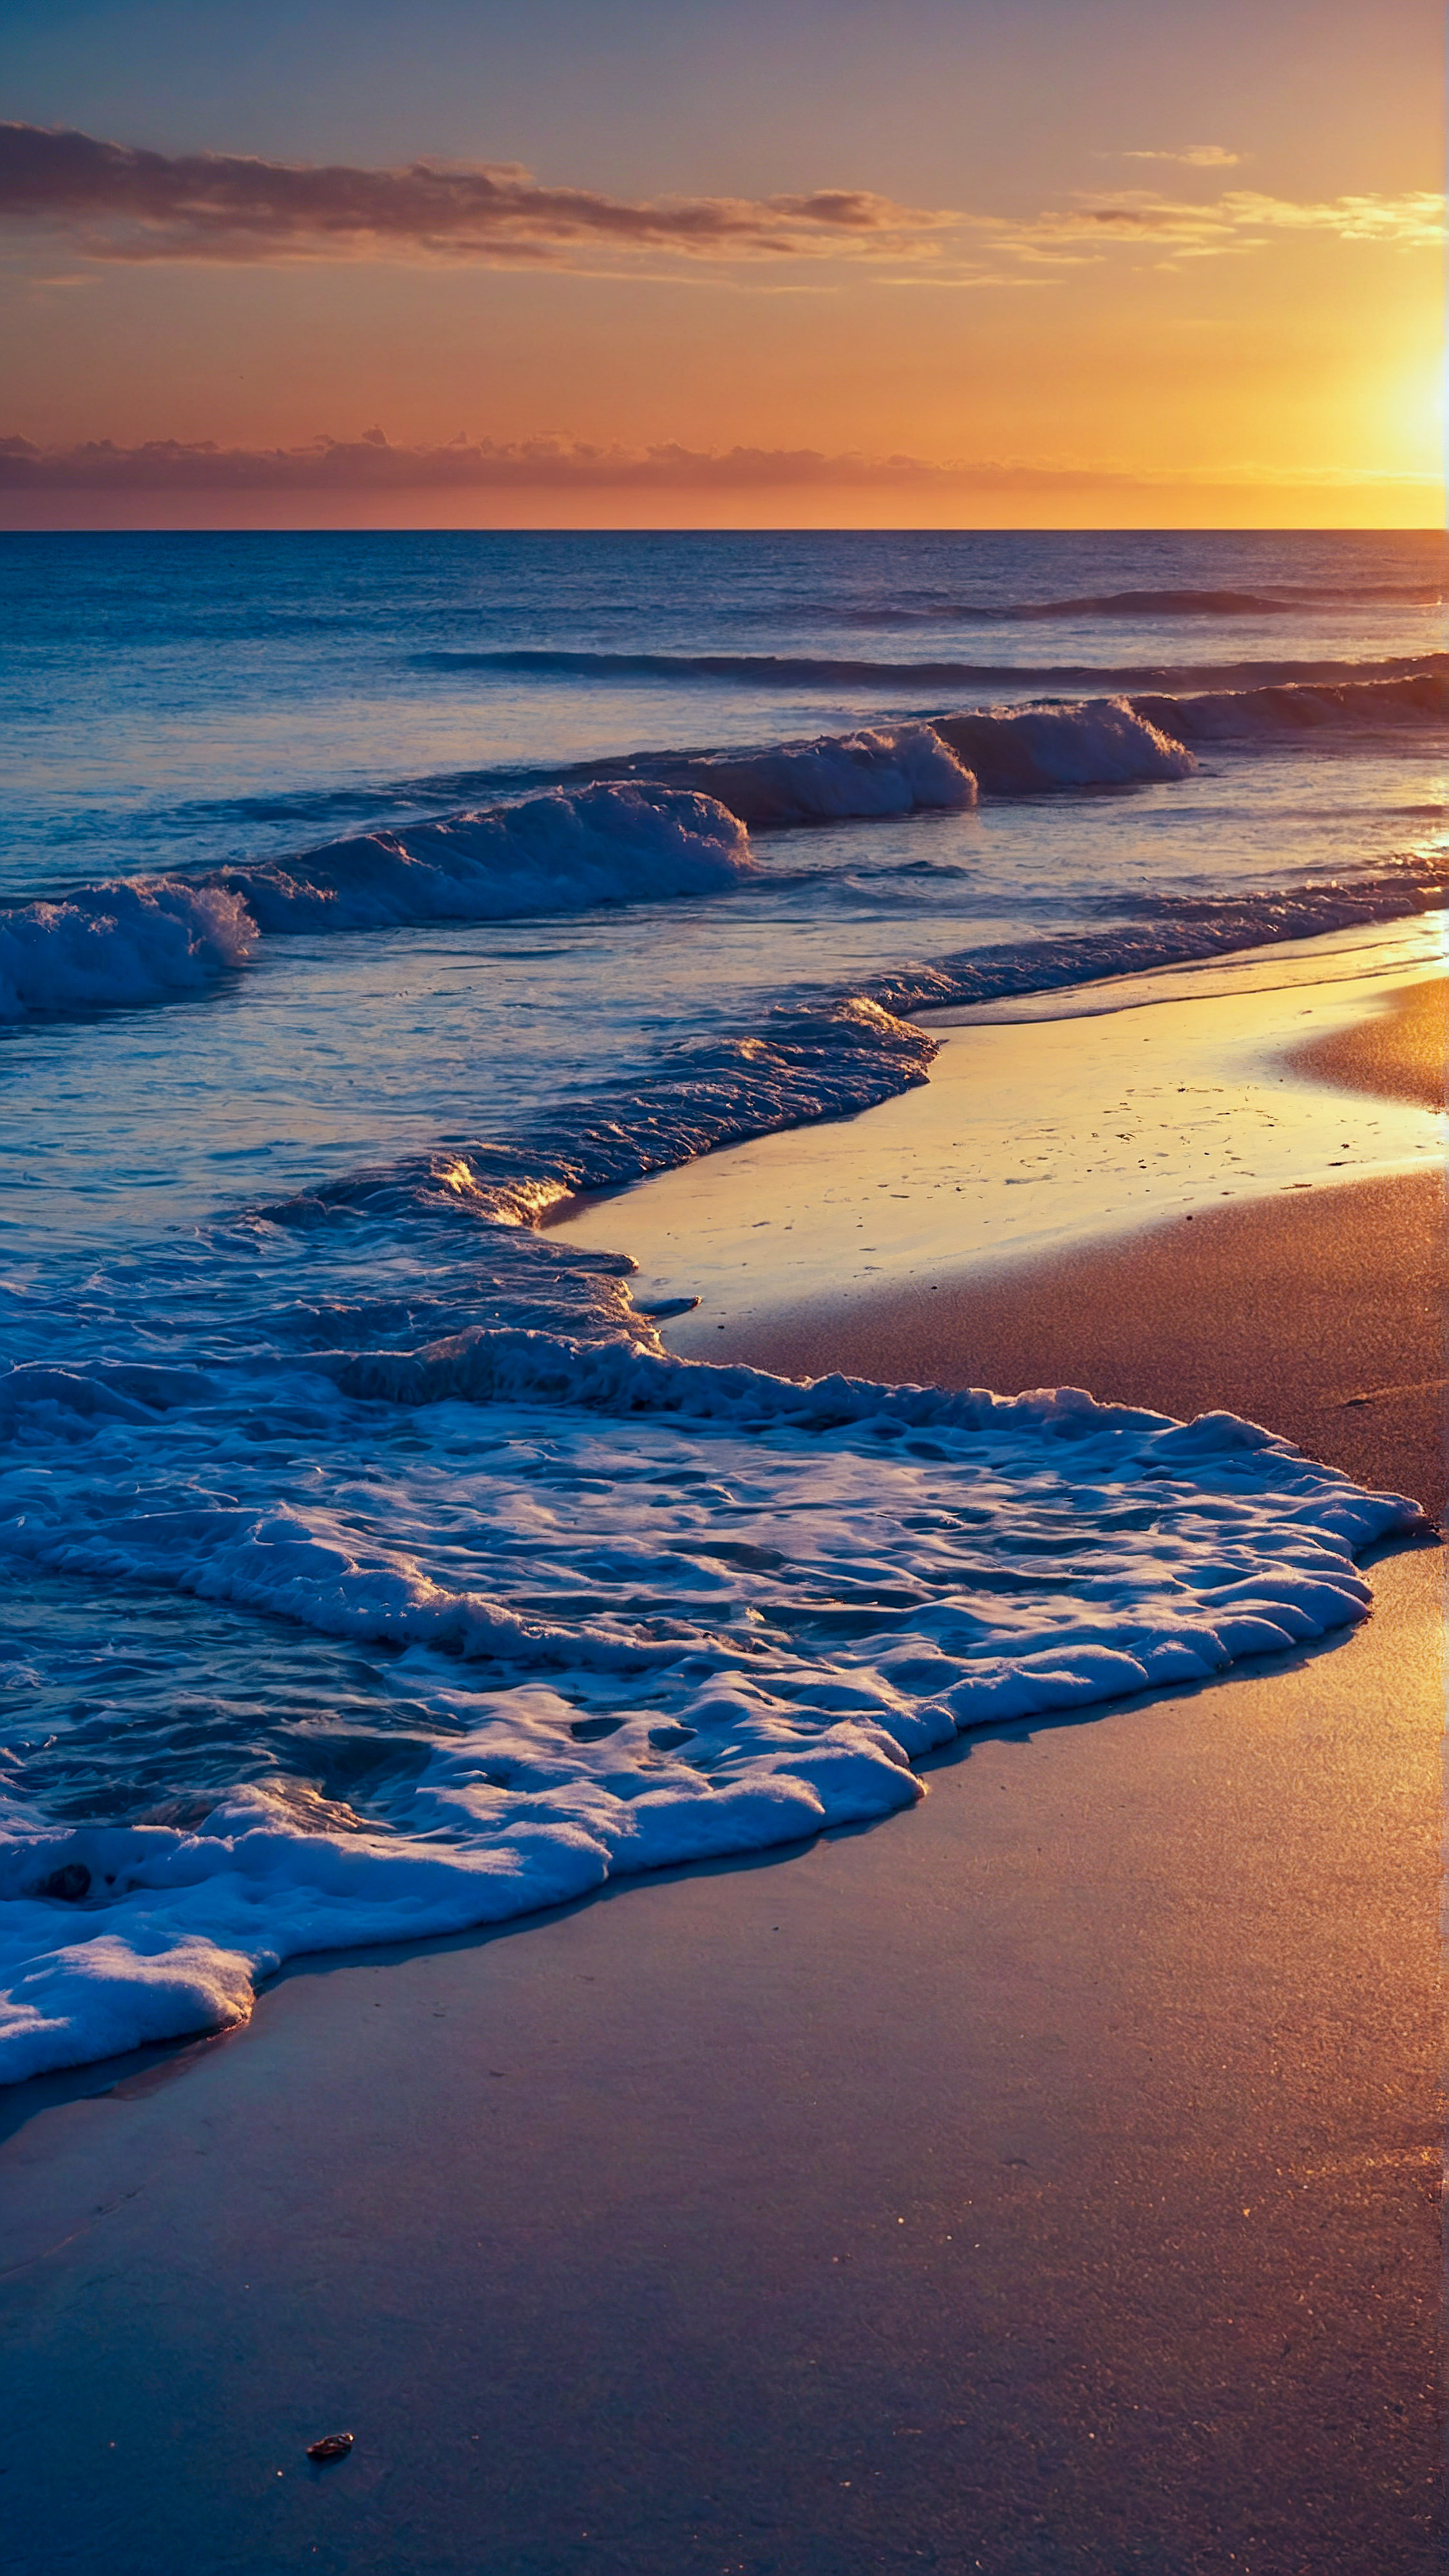 Perdez-vous dans la magie de nos images style pour fond d'écran iPhone, dépeignant une plage sereine au coucher du soleil, avec le soleil doré qui plonge sous l'horizon.